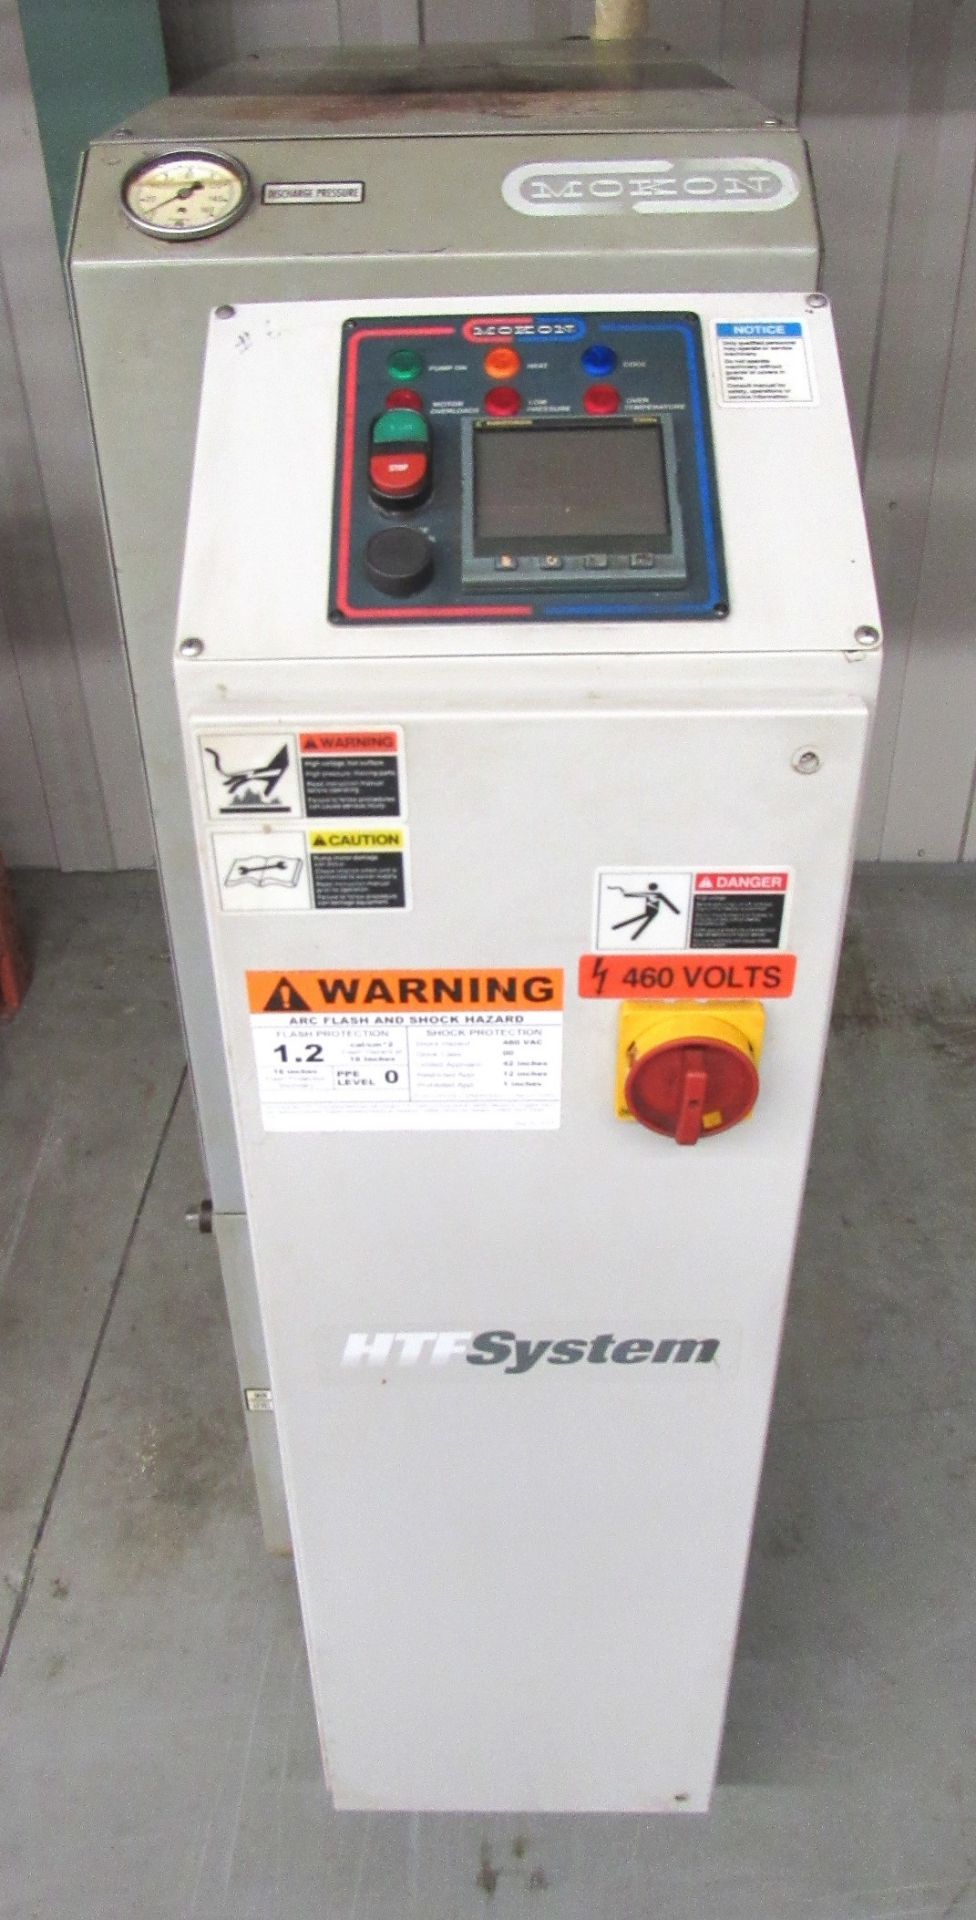 Mokon Single Zone Hot Oil Temperature Control Unit - S/N 62344 (New 2000) - Image 4 of 4